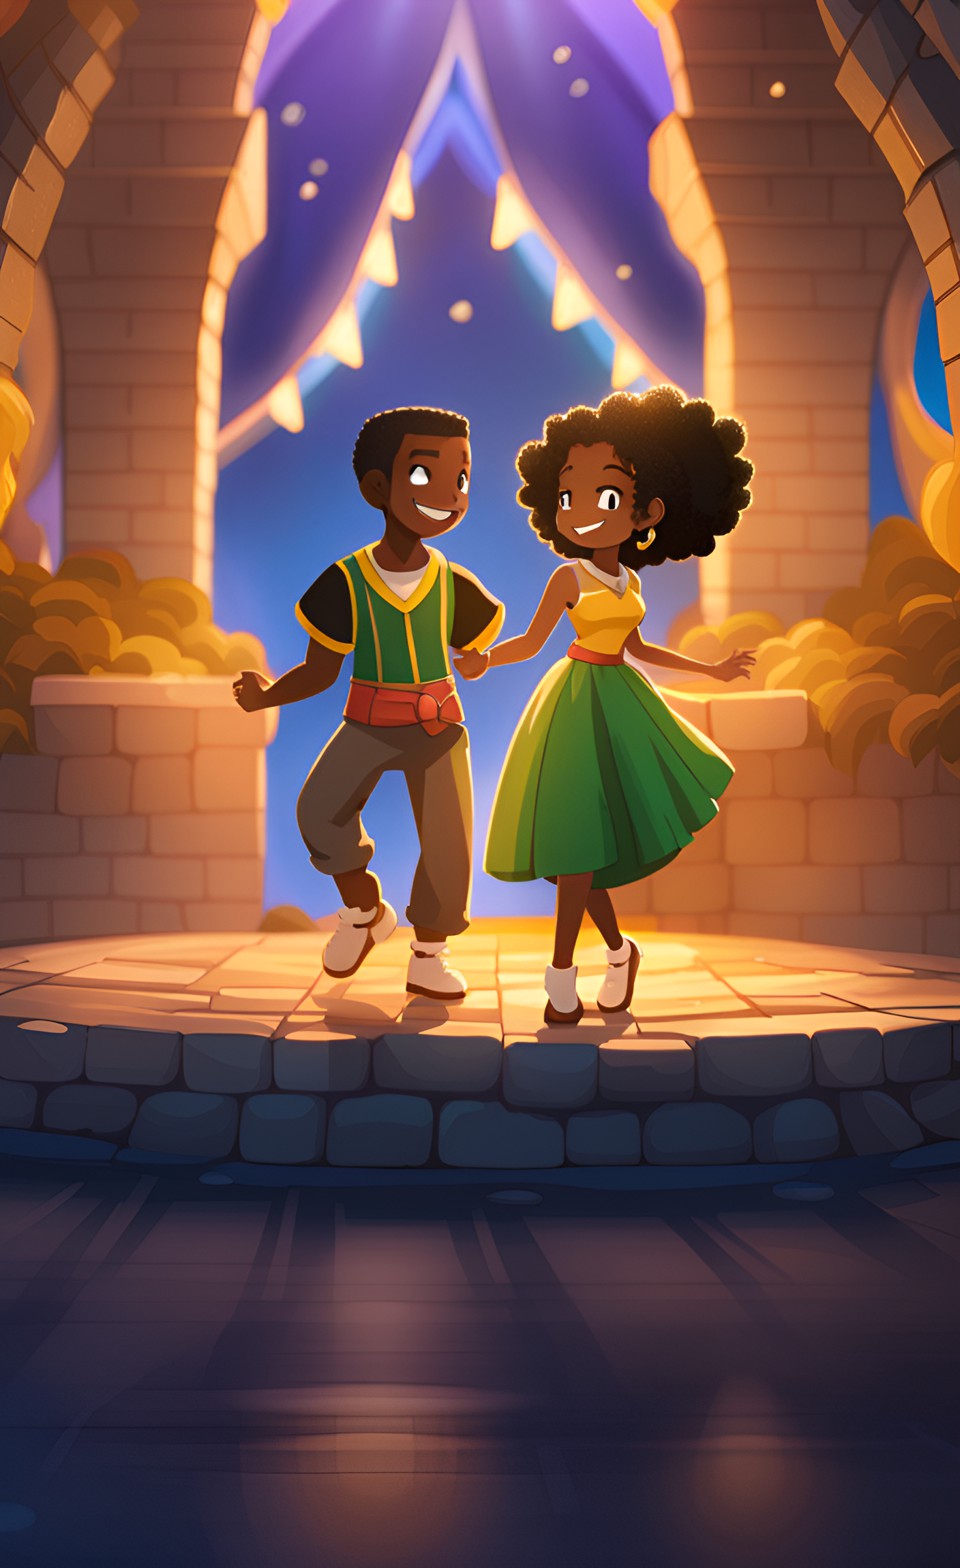 Jamaican anime couple dancing in a castle Jamai110